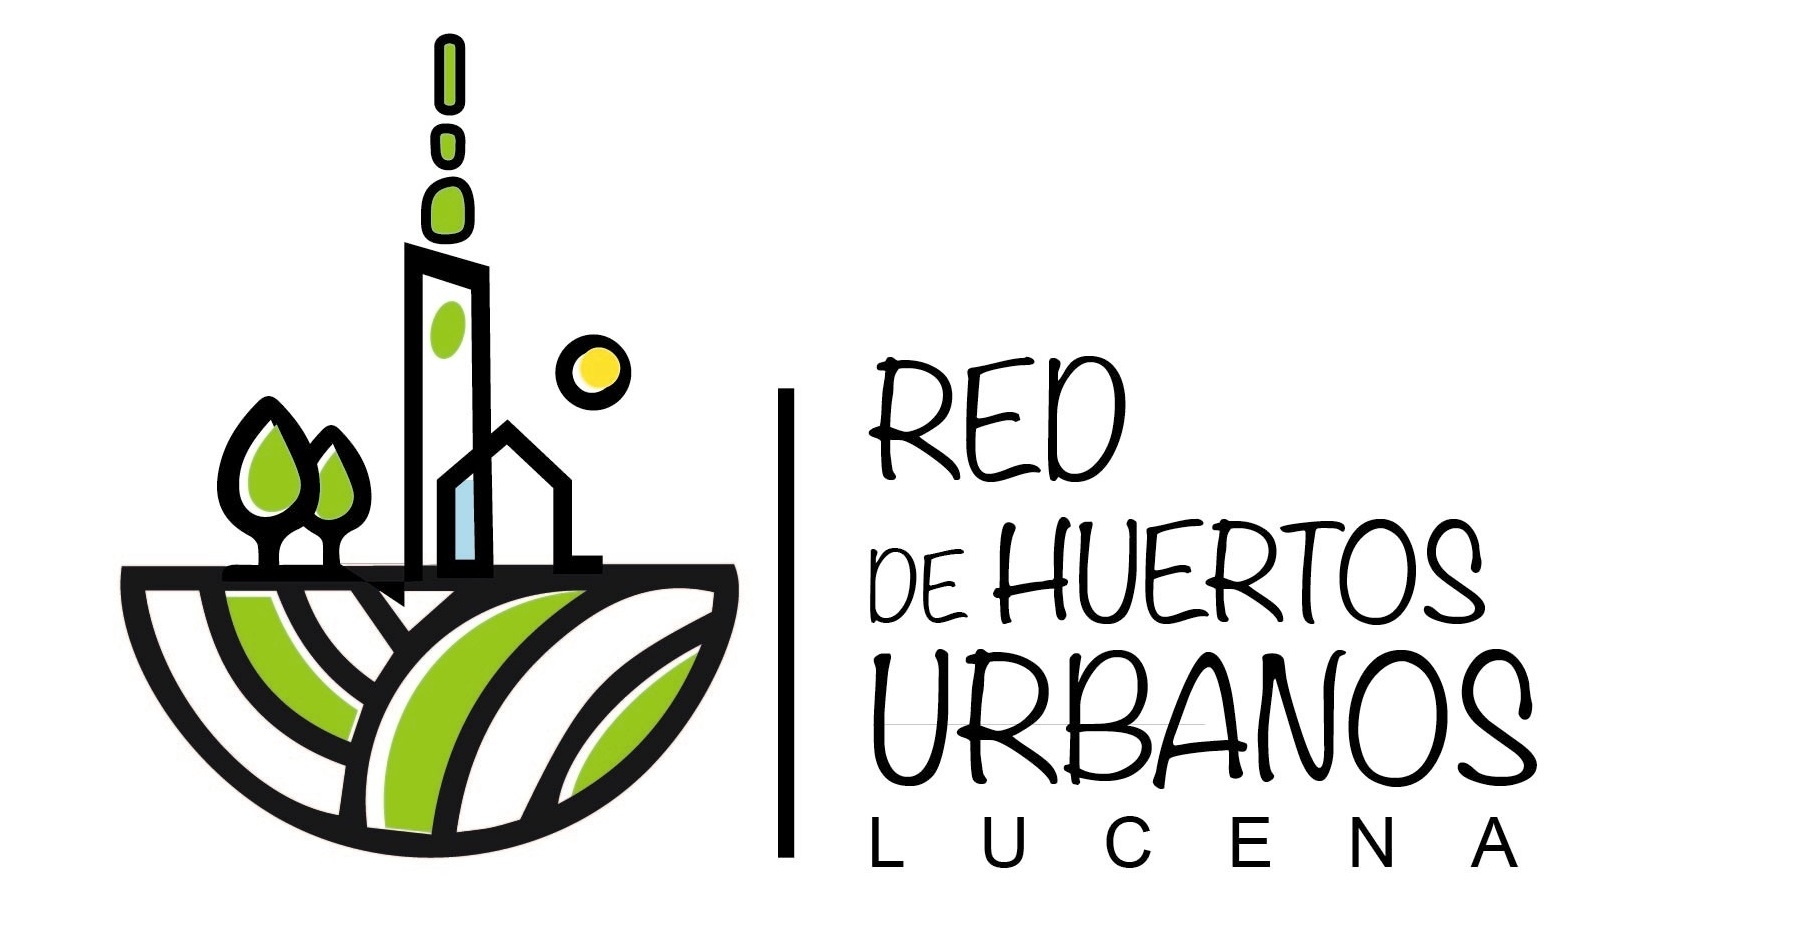 Logo y enlace a Red de Huertos Urbanos